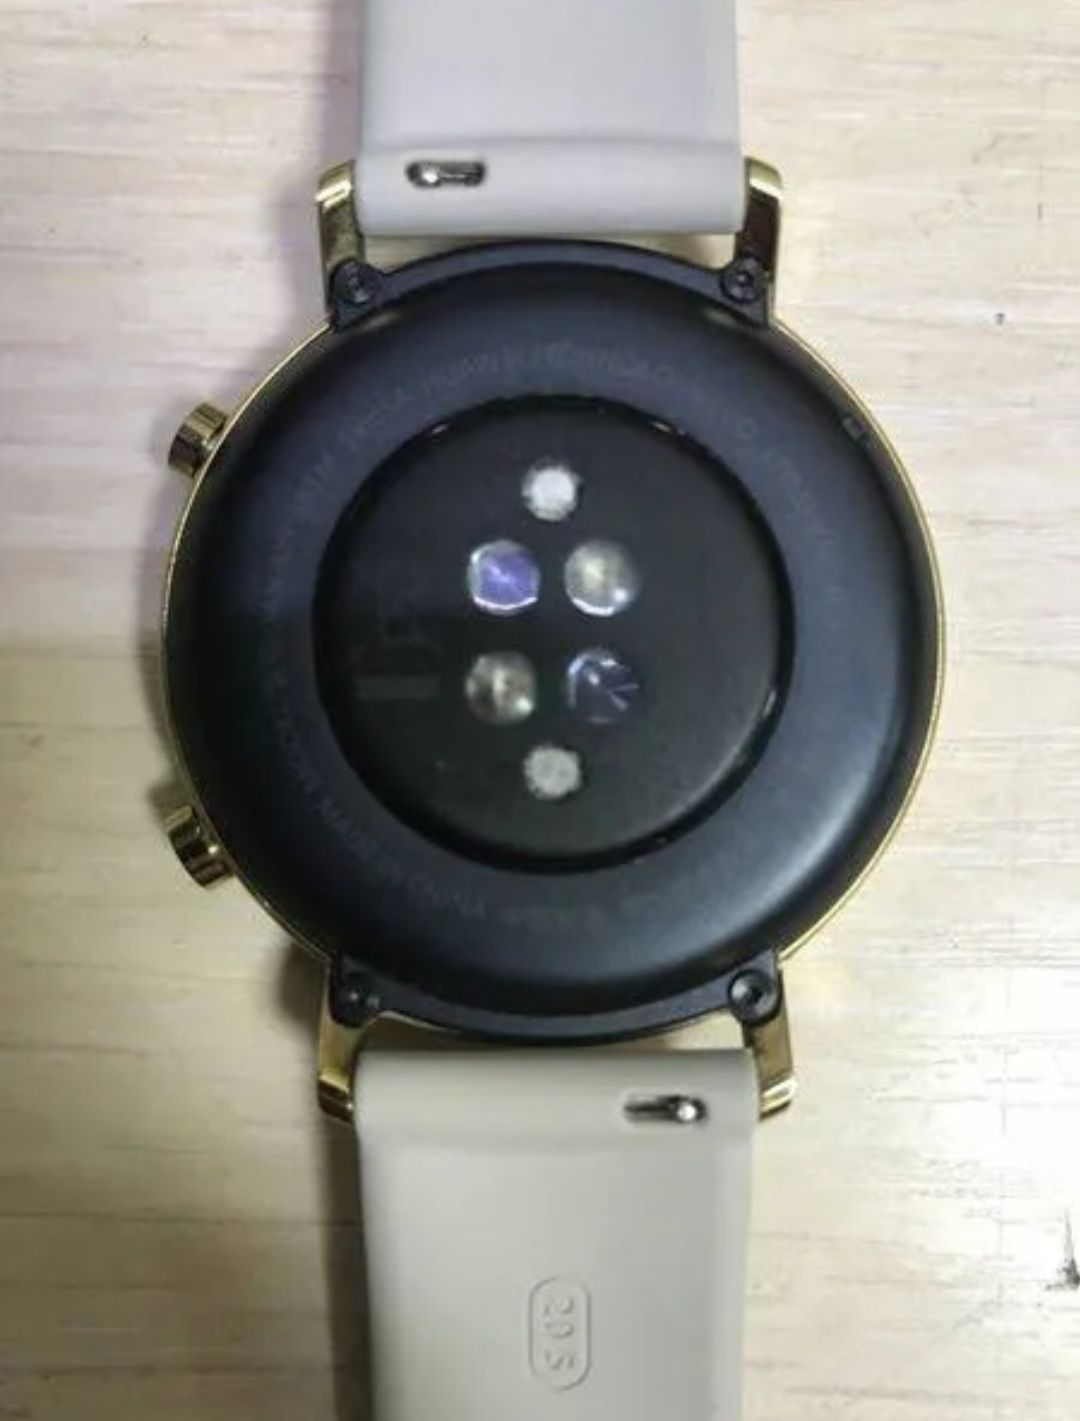 Смарт часы Huawei GT-2